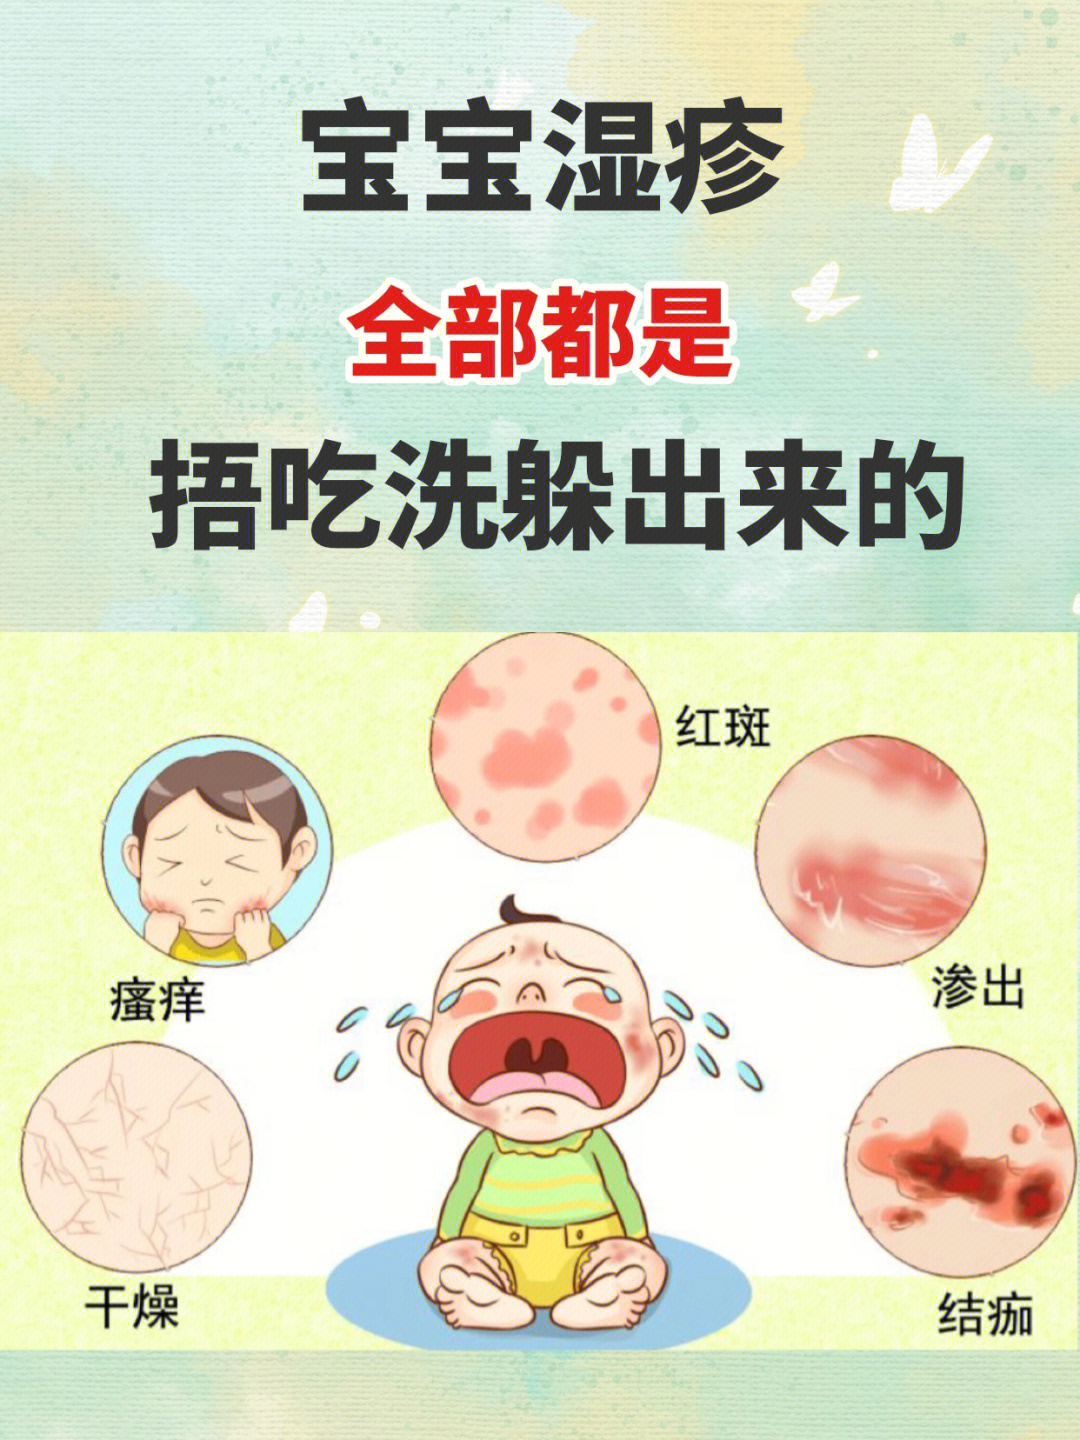 湿疹症状及原因图片